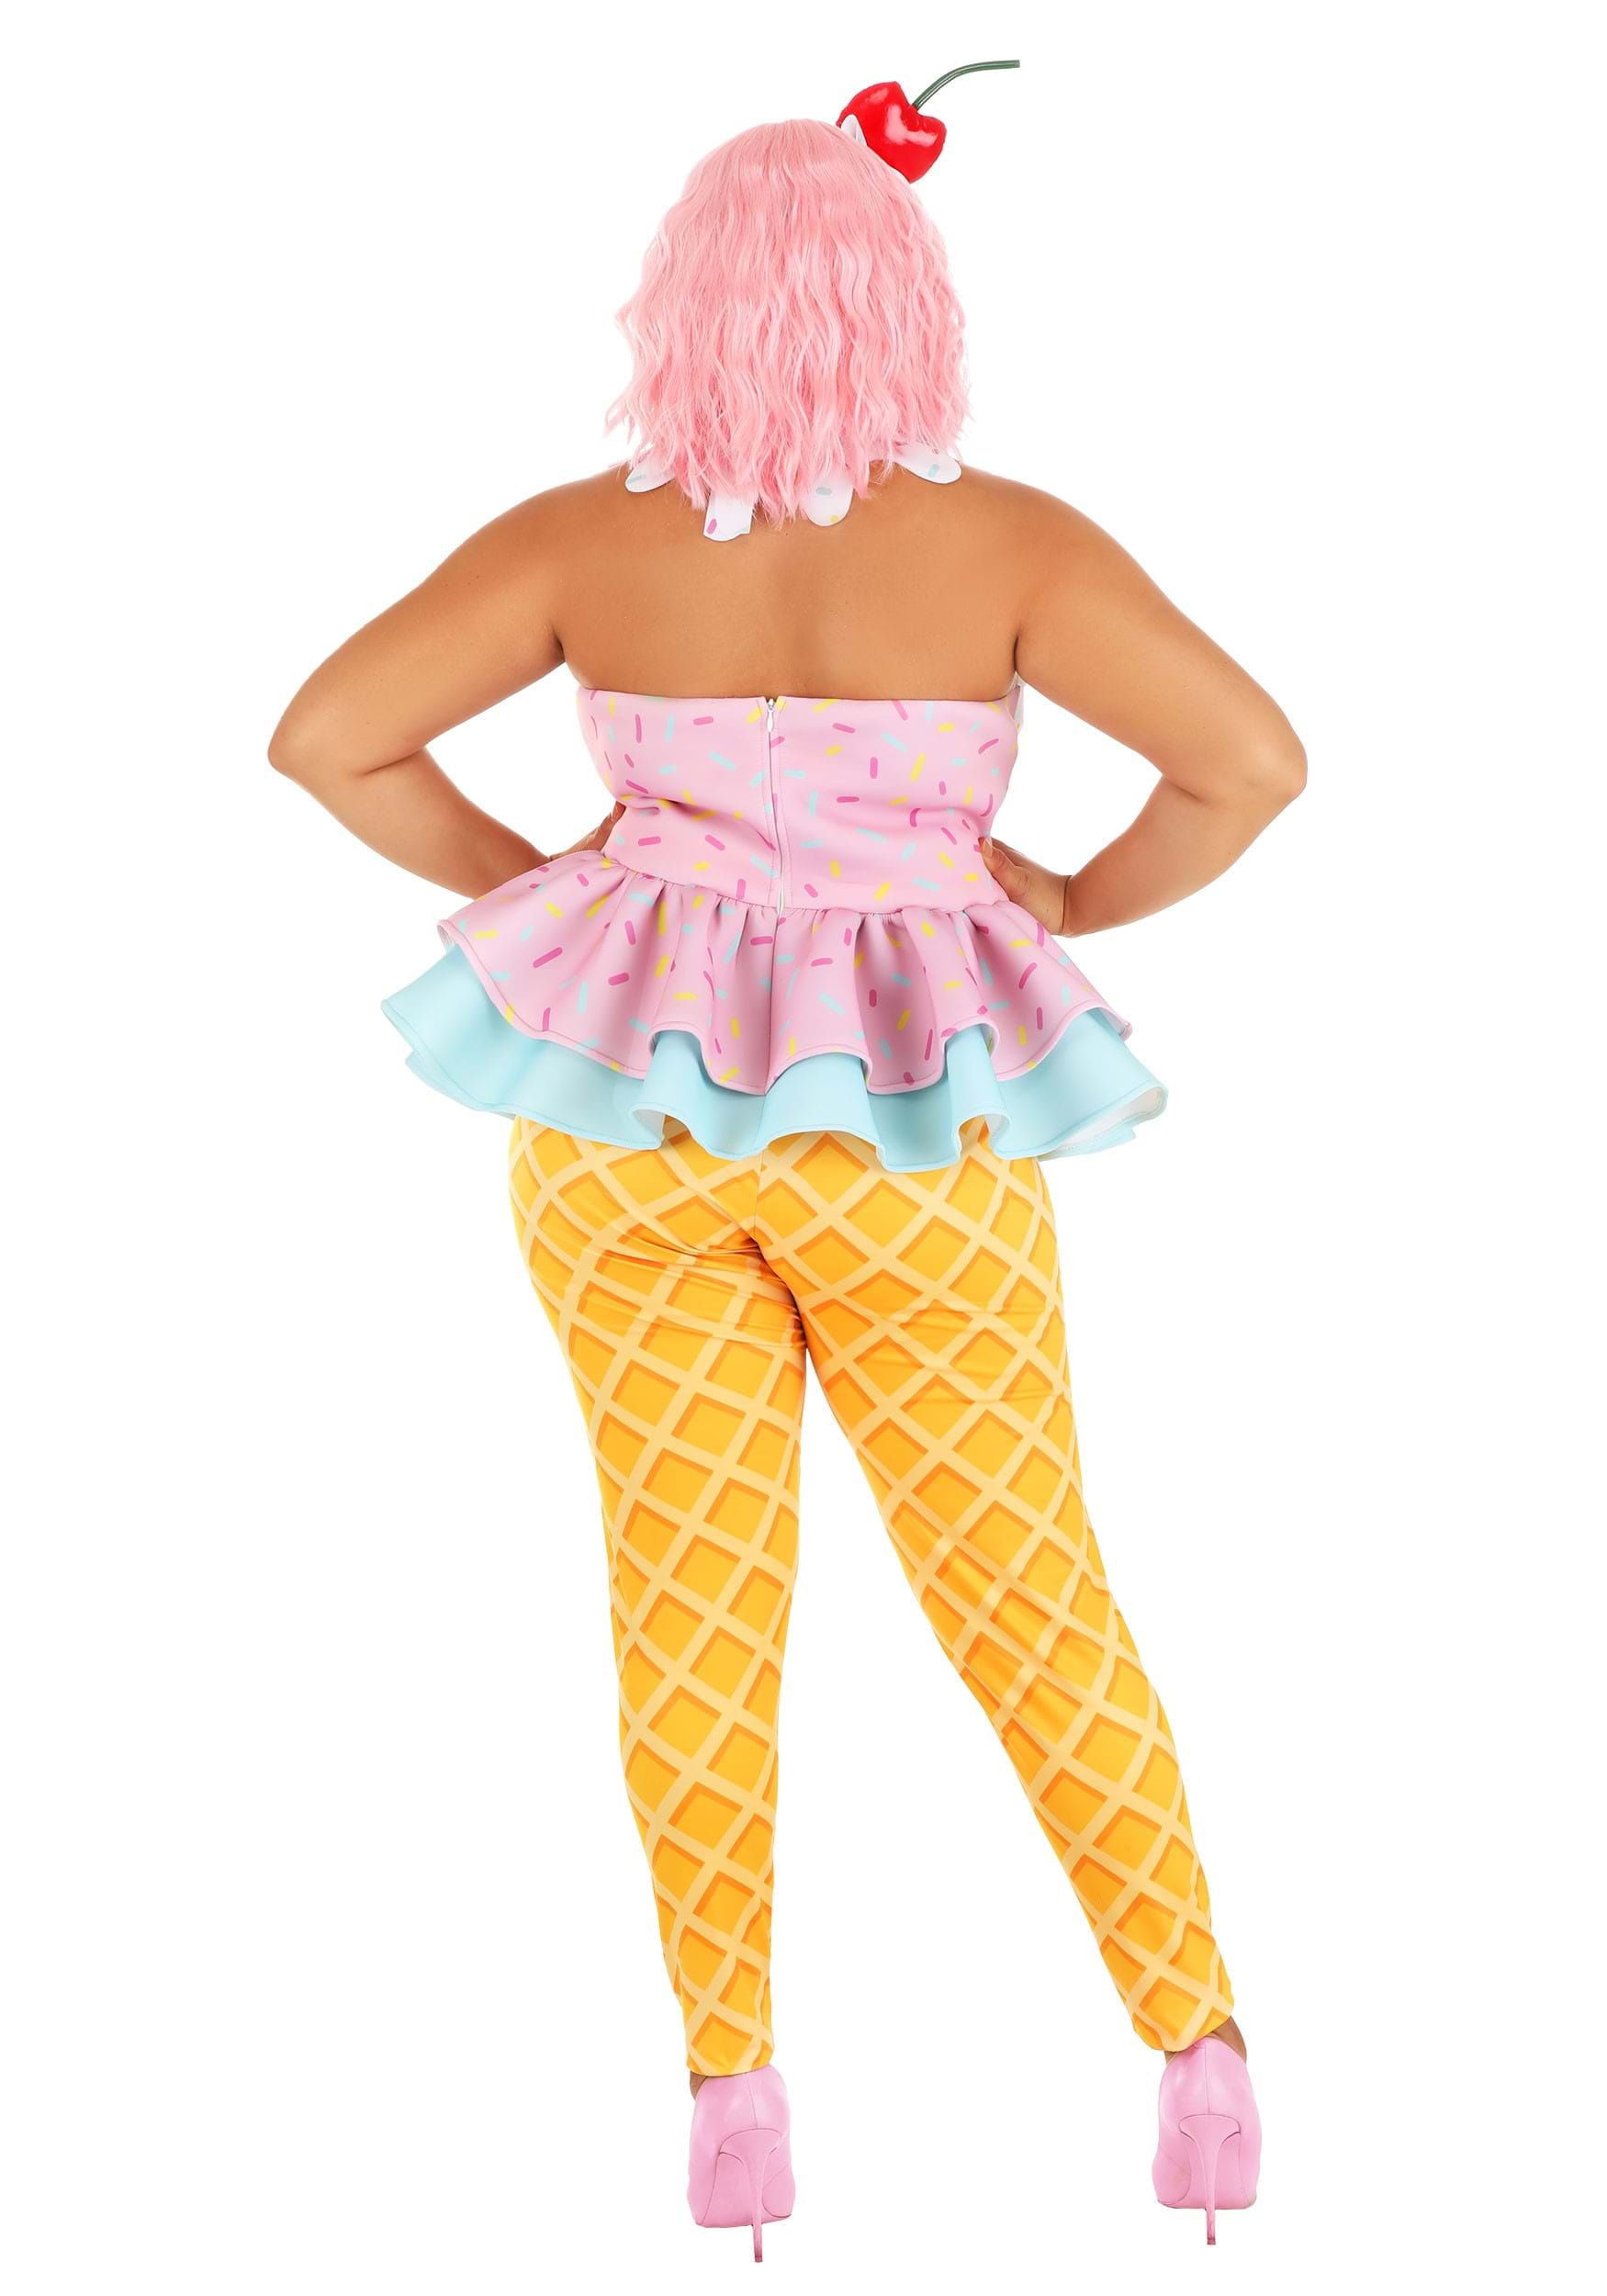 Plus Size Sweet Treat Ice Cream Women's Costume